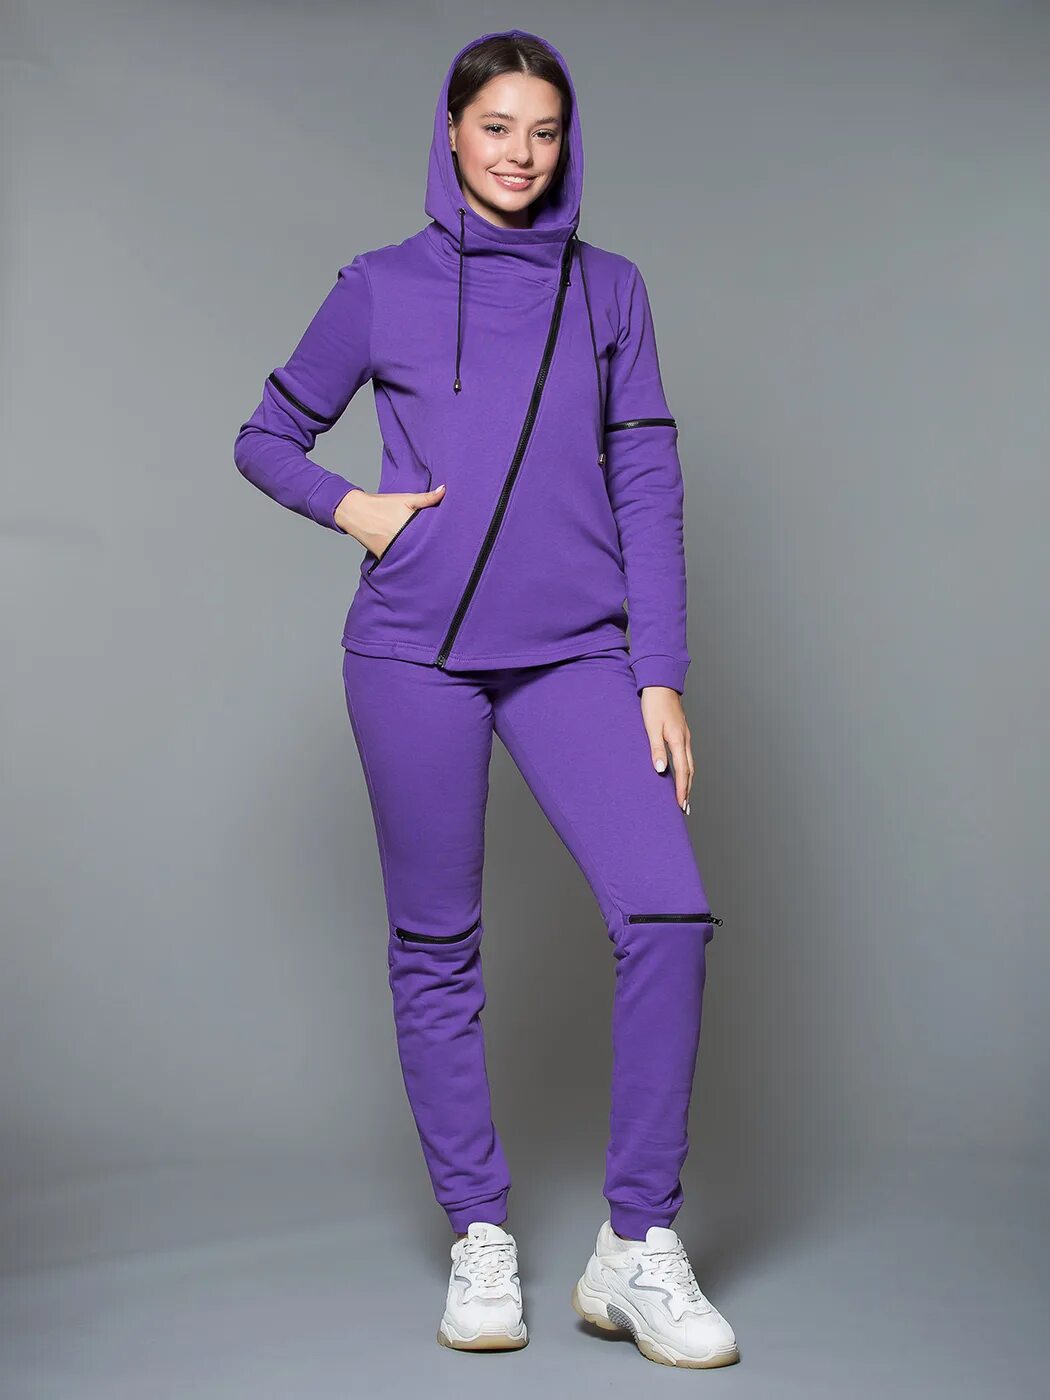 Озон спортивный костюм 54 размера. Спортивный костюм KIDONLY. Синий спортивный костюм женский. Фиолетовый спортивный костюм. Озон спортивный костюм женский.